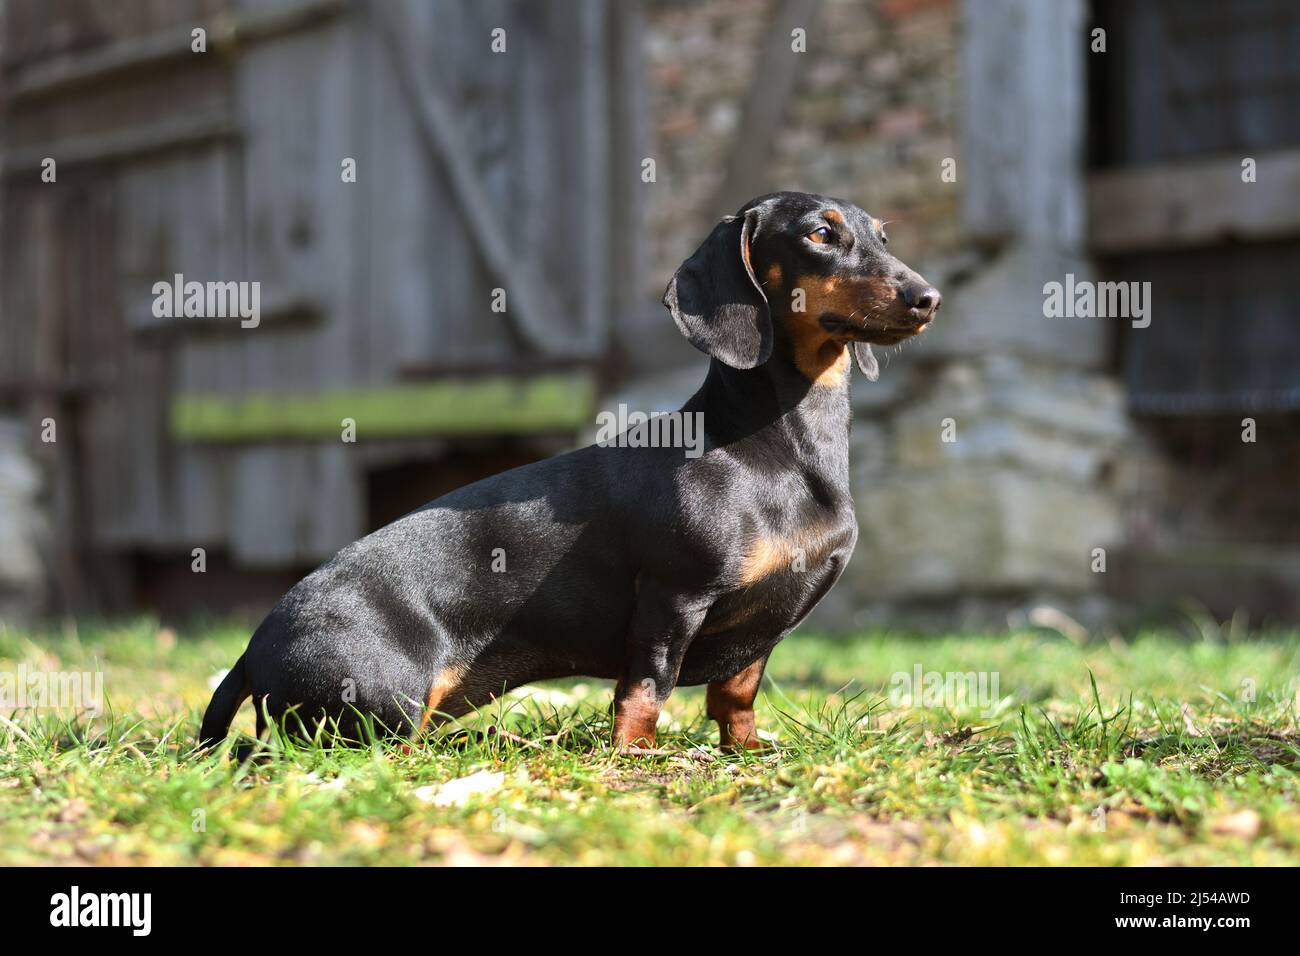 Kurzhaariger Dachshund, kurzhaariger Wursthund, Haushund (Canis lupus f. familiaris), sitzt vor einer alten Scheune, Deutschland, Norden Stockfoto